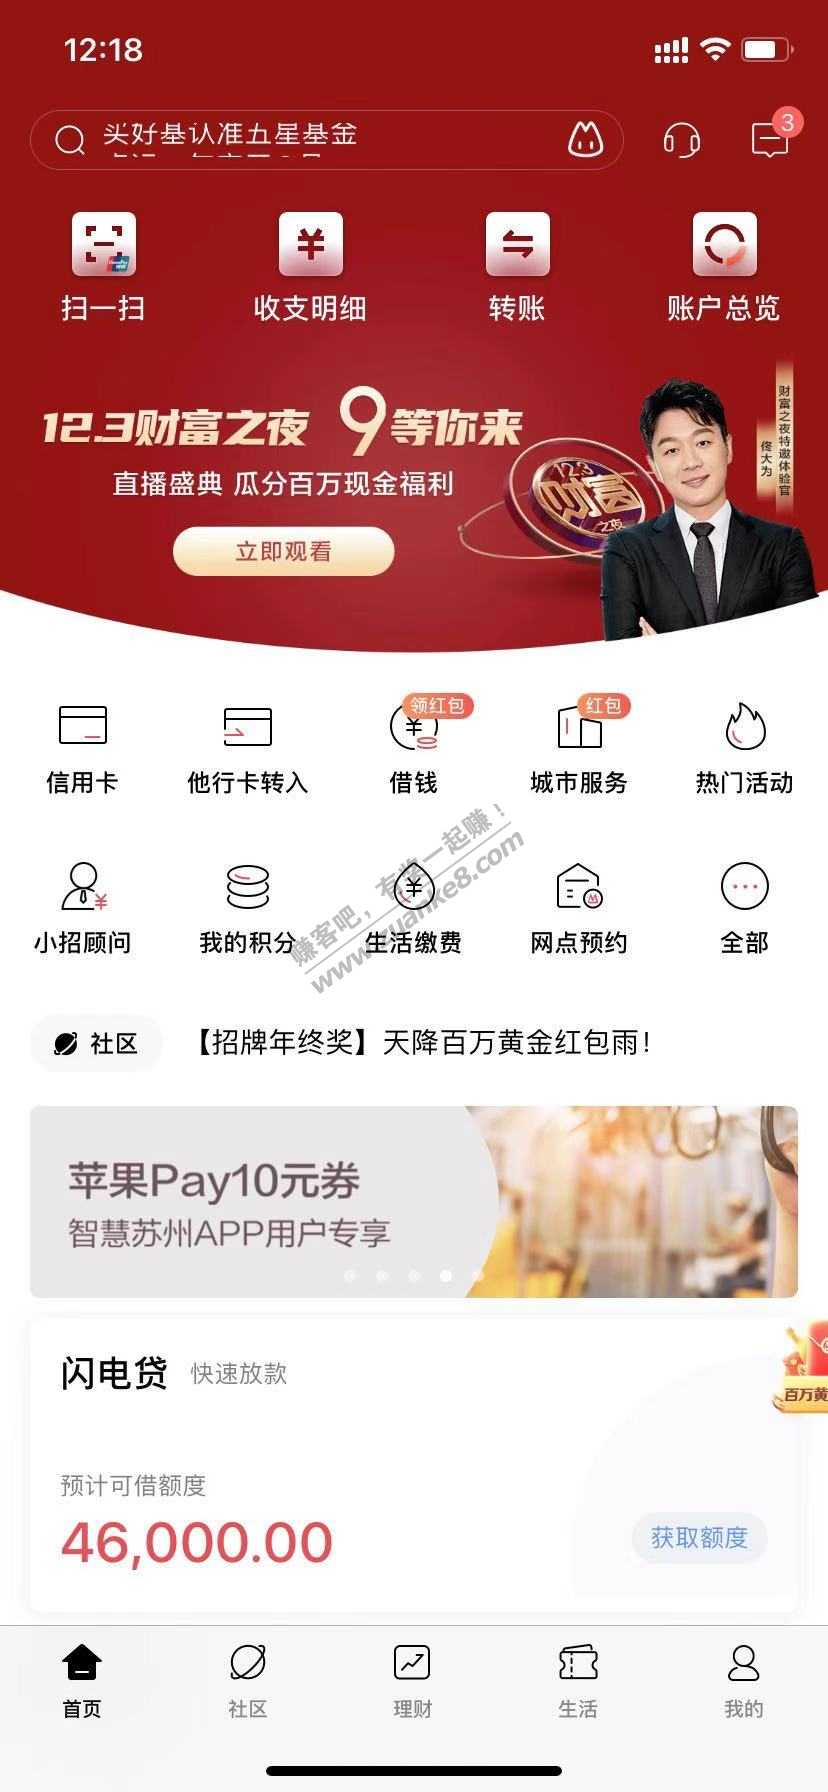 苏州招行 applypay 市民卡10券-惠小助(52huixz.com)